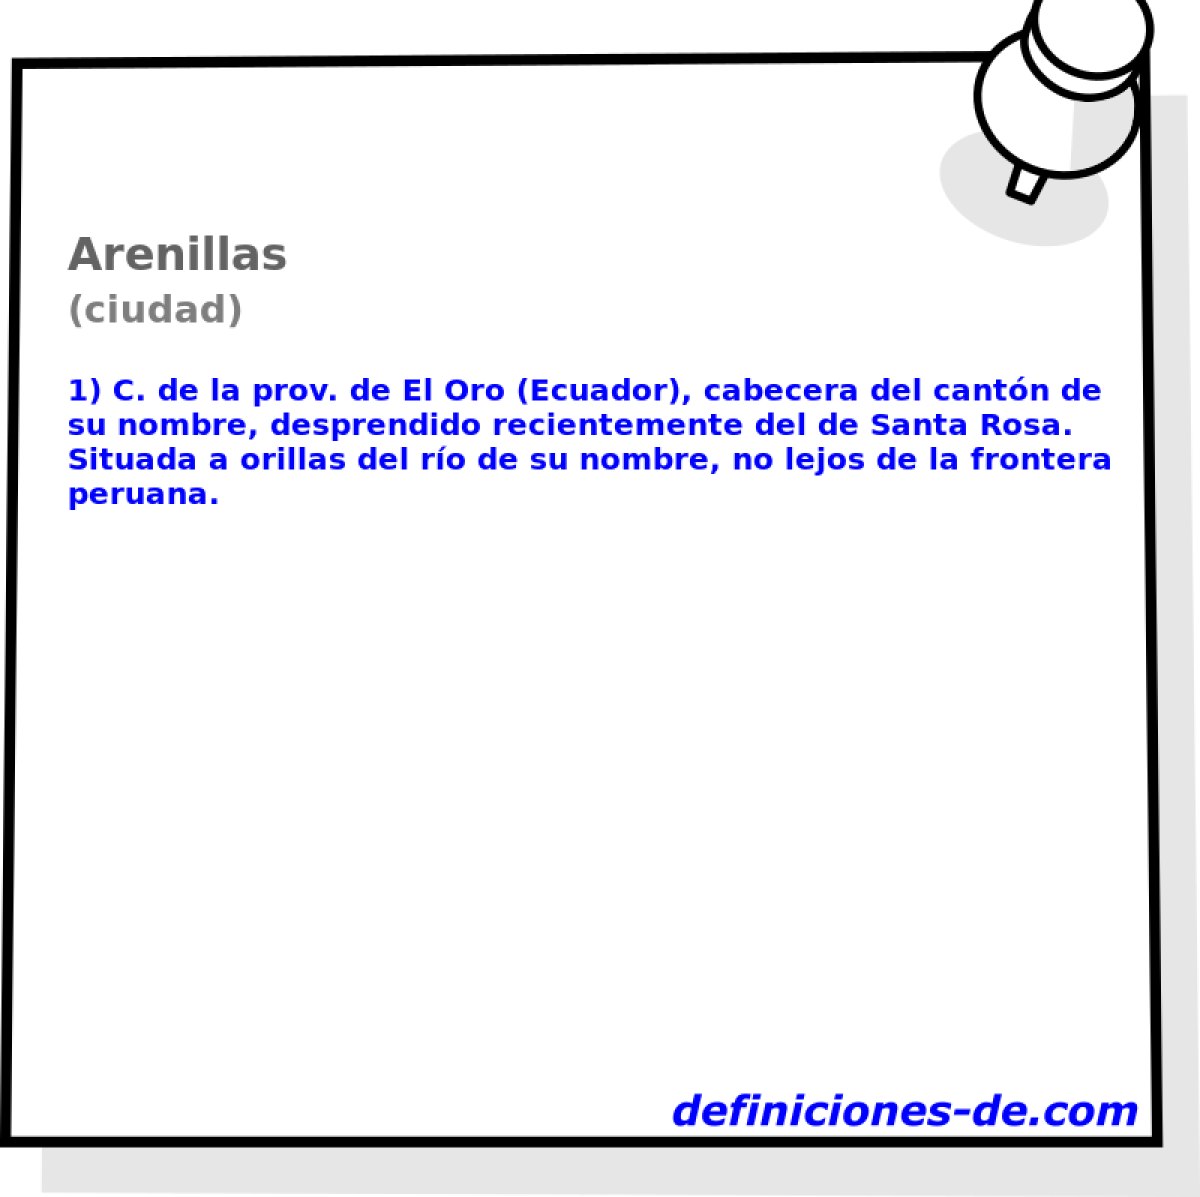 Arenillas (ciudad)